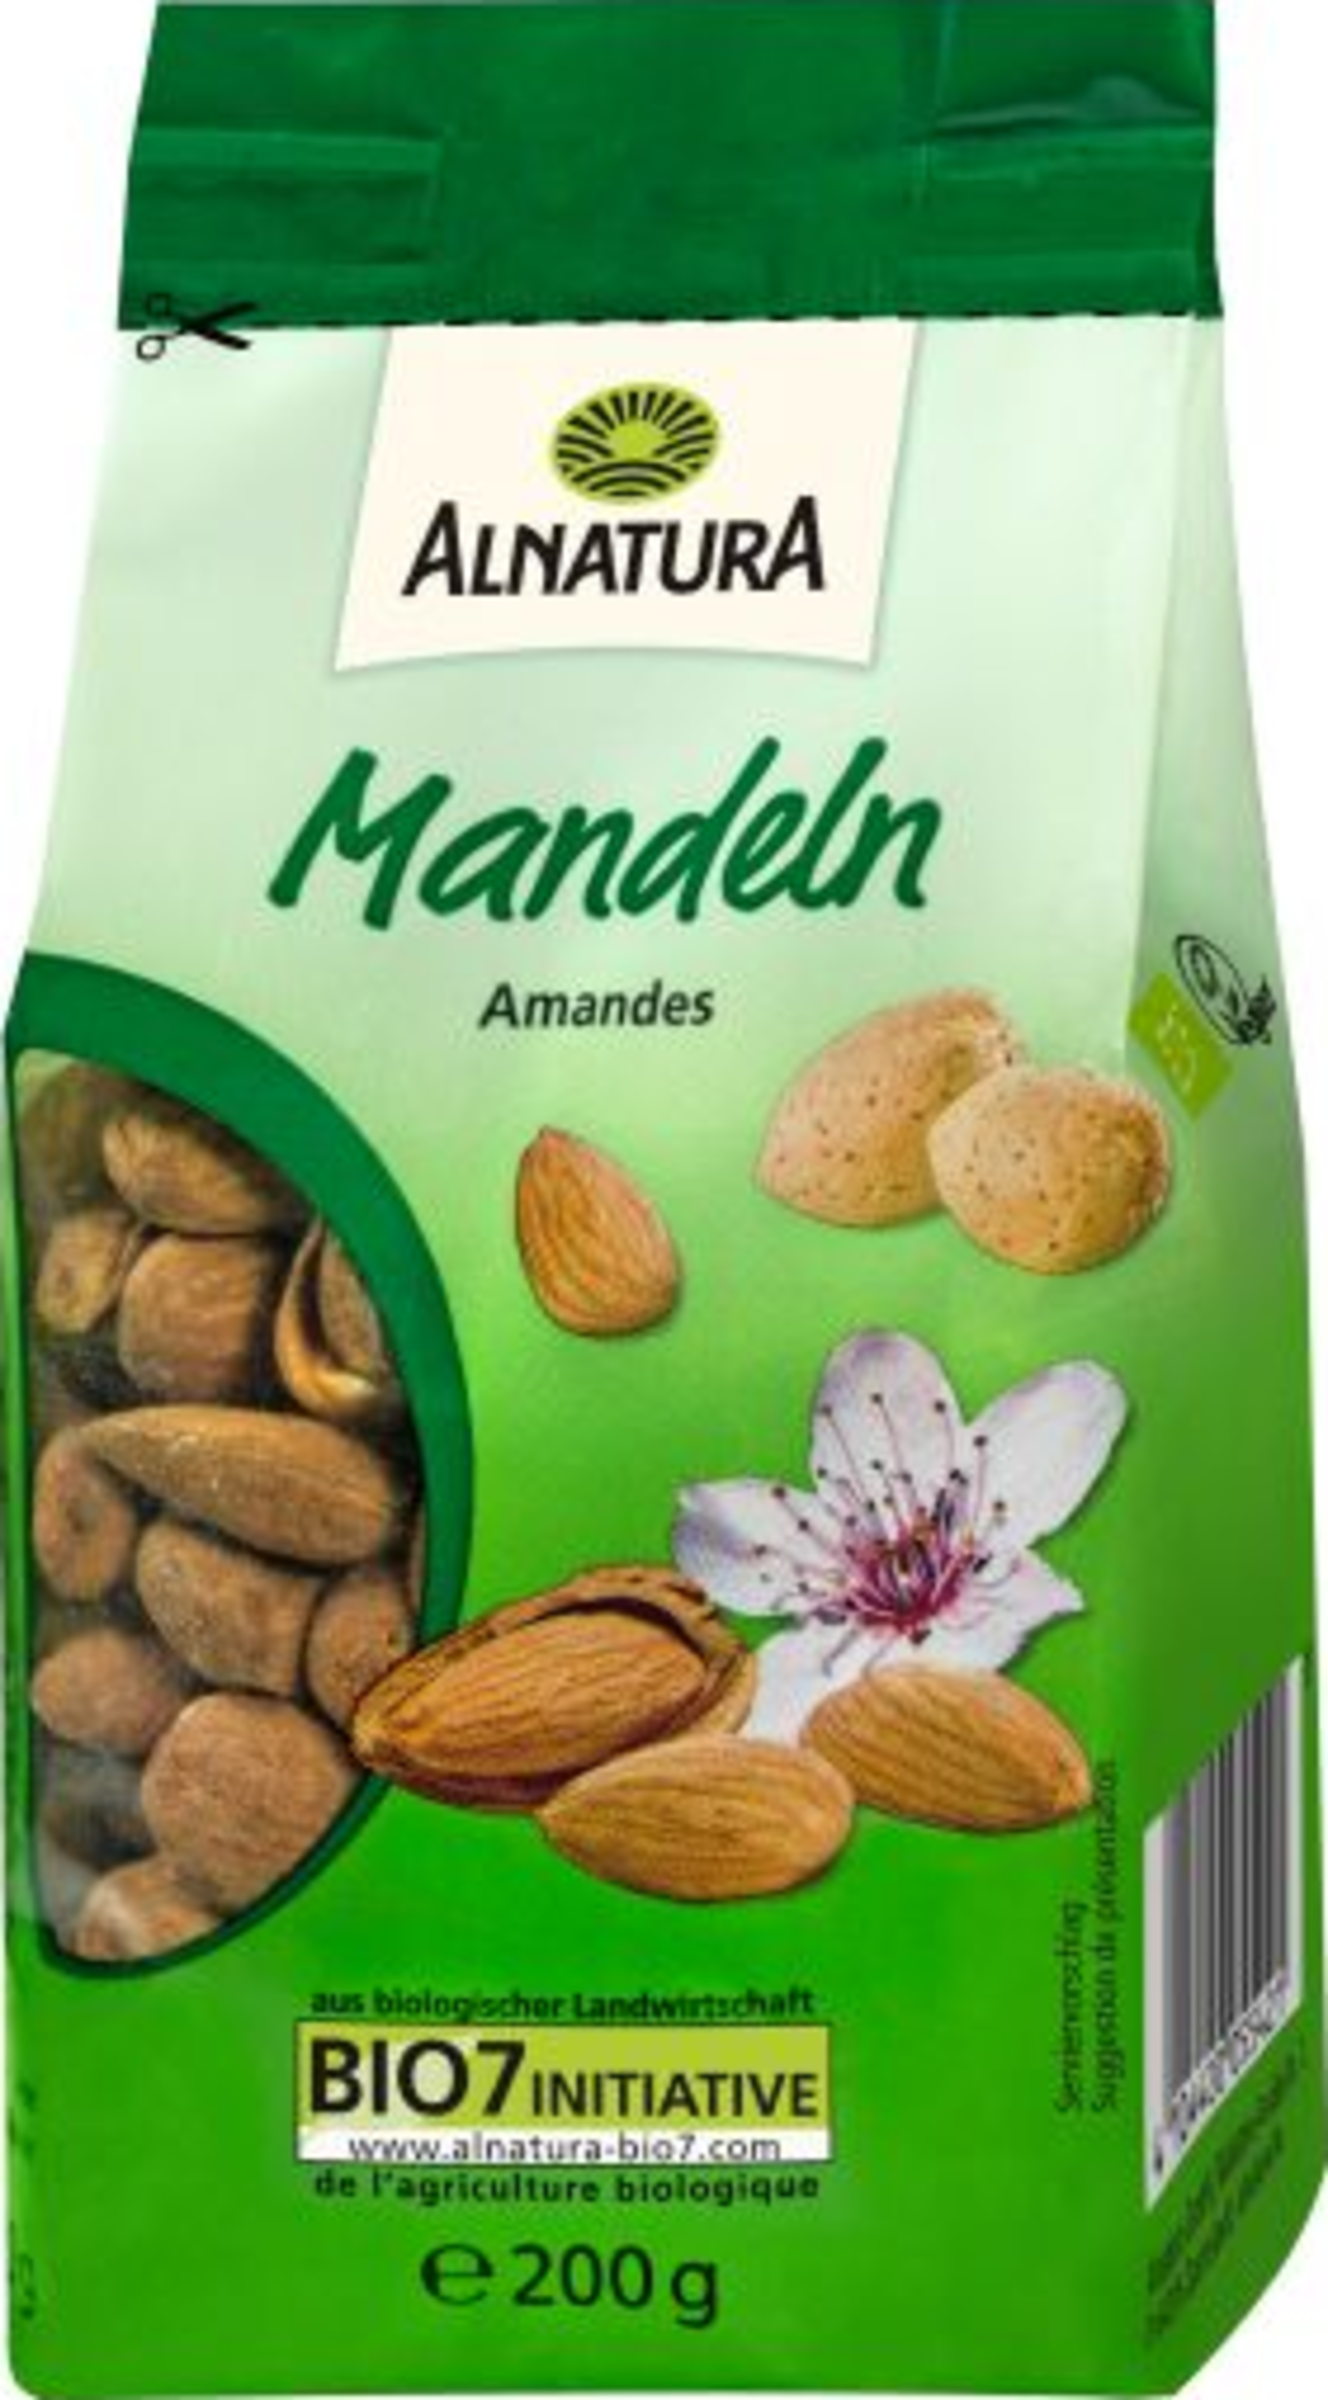 Organic almond